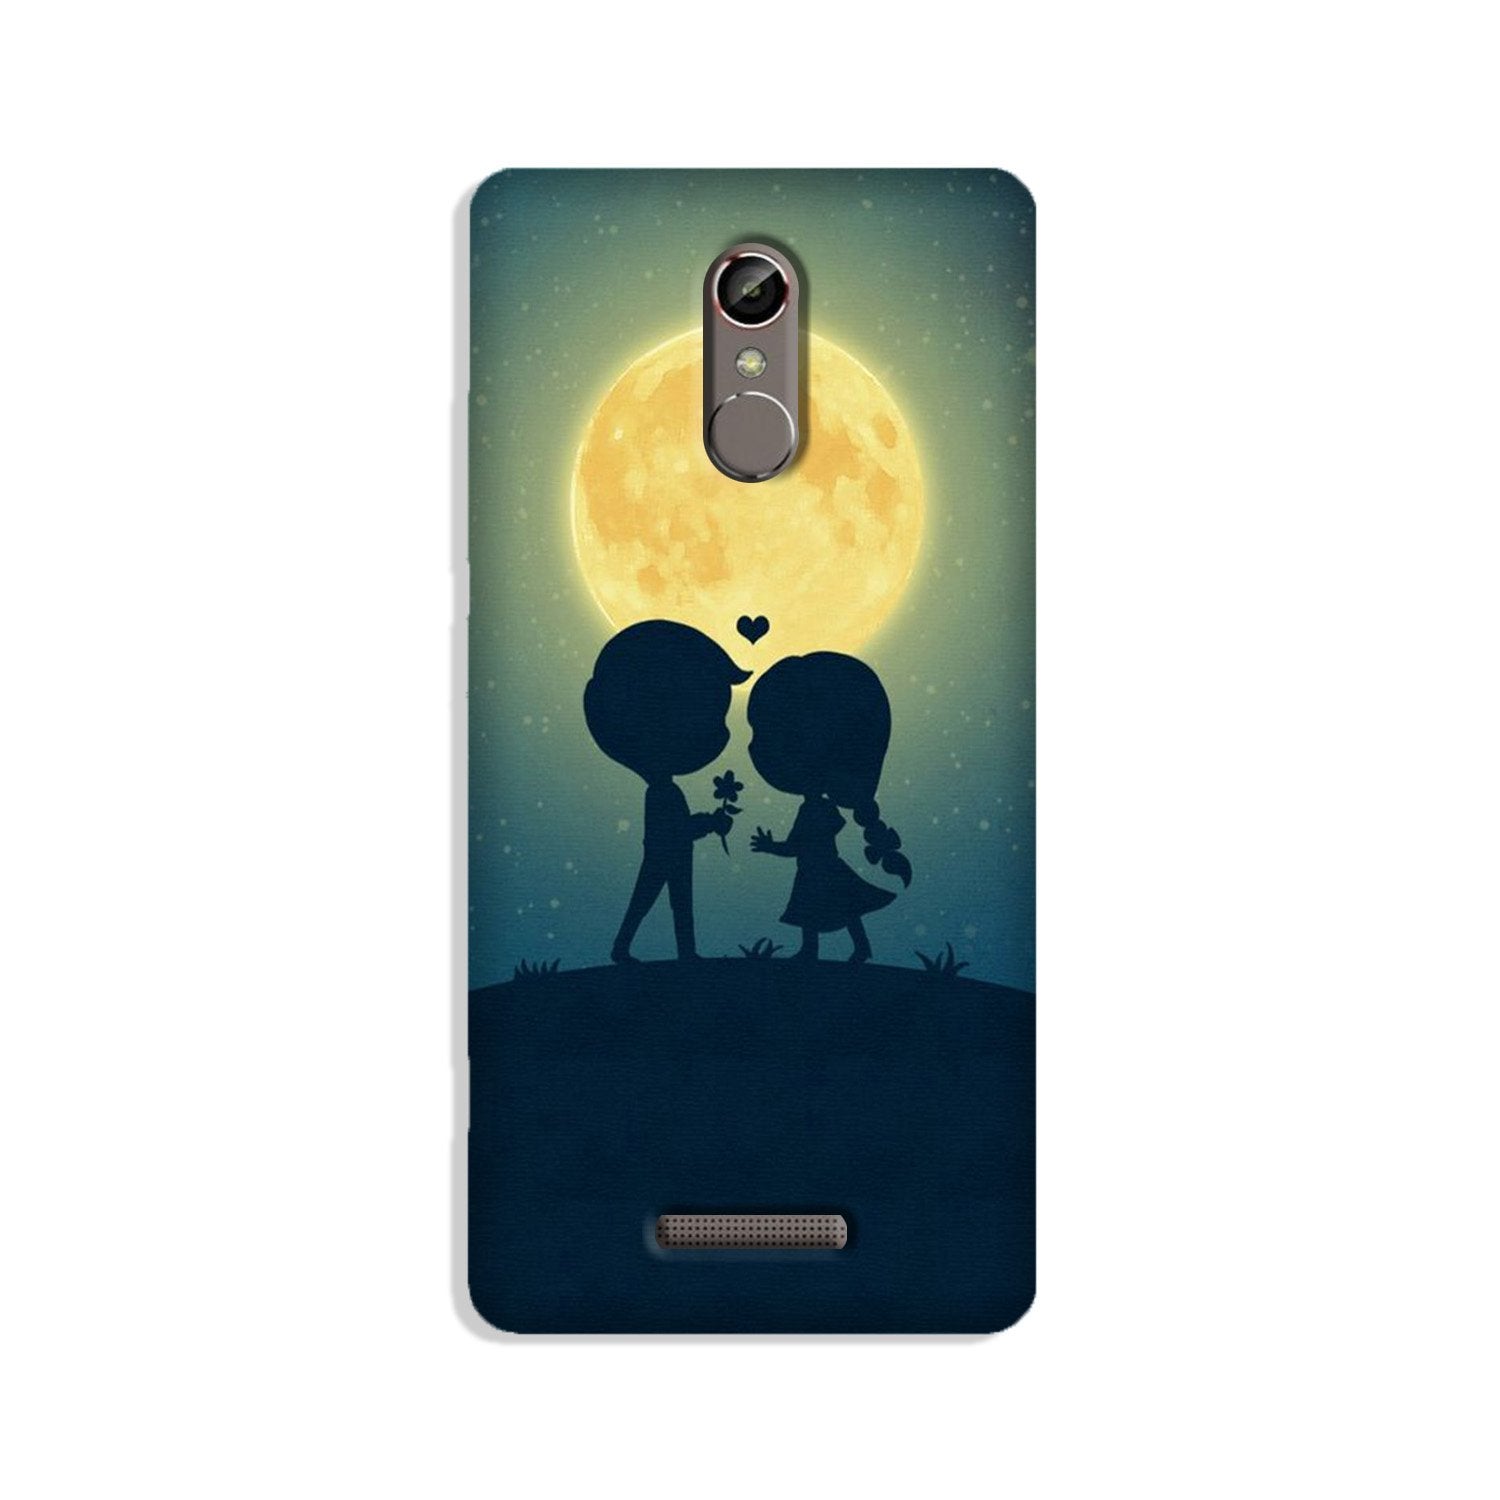 Love Couple Case for Redmi Note 3(Design - 109)